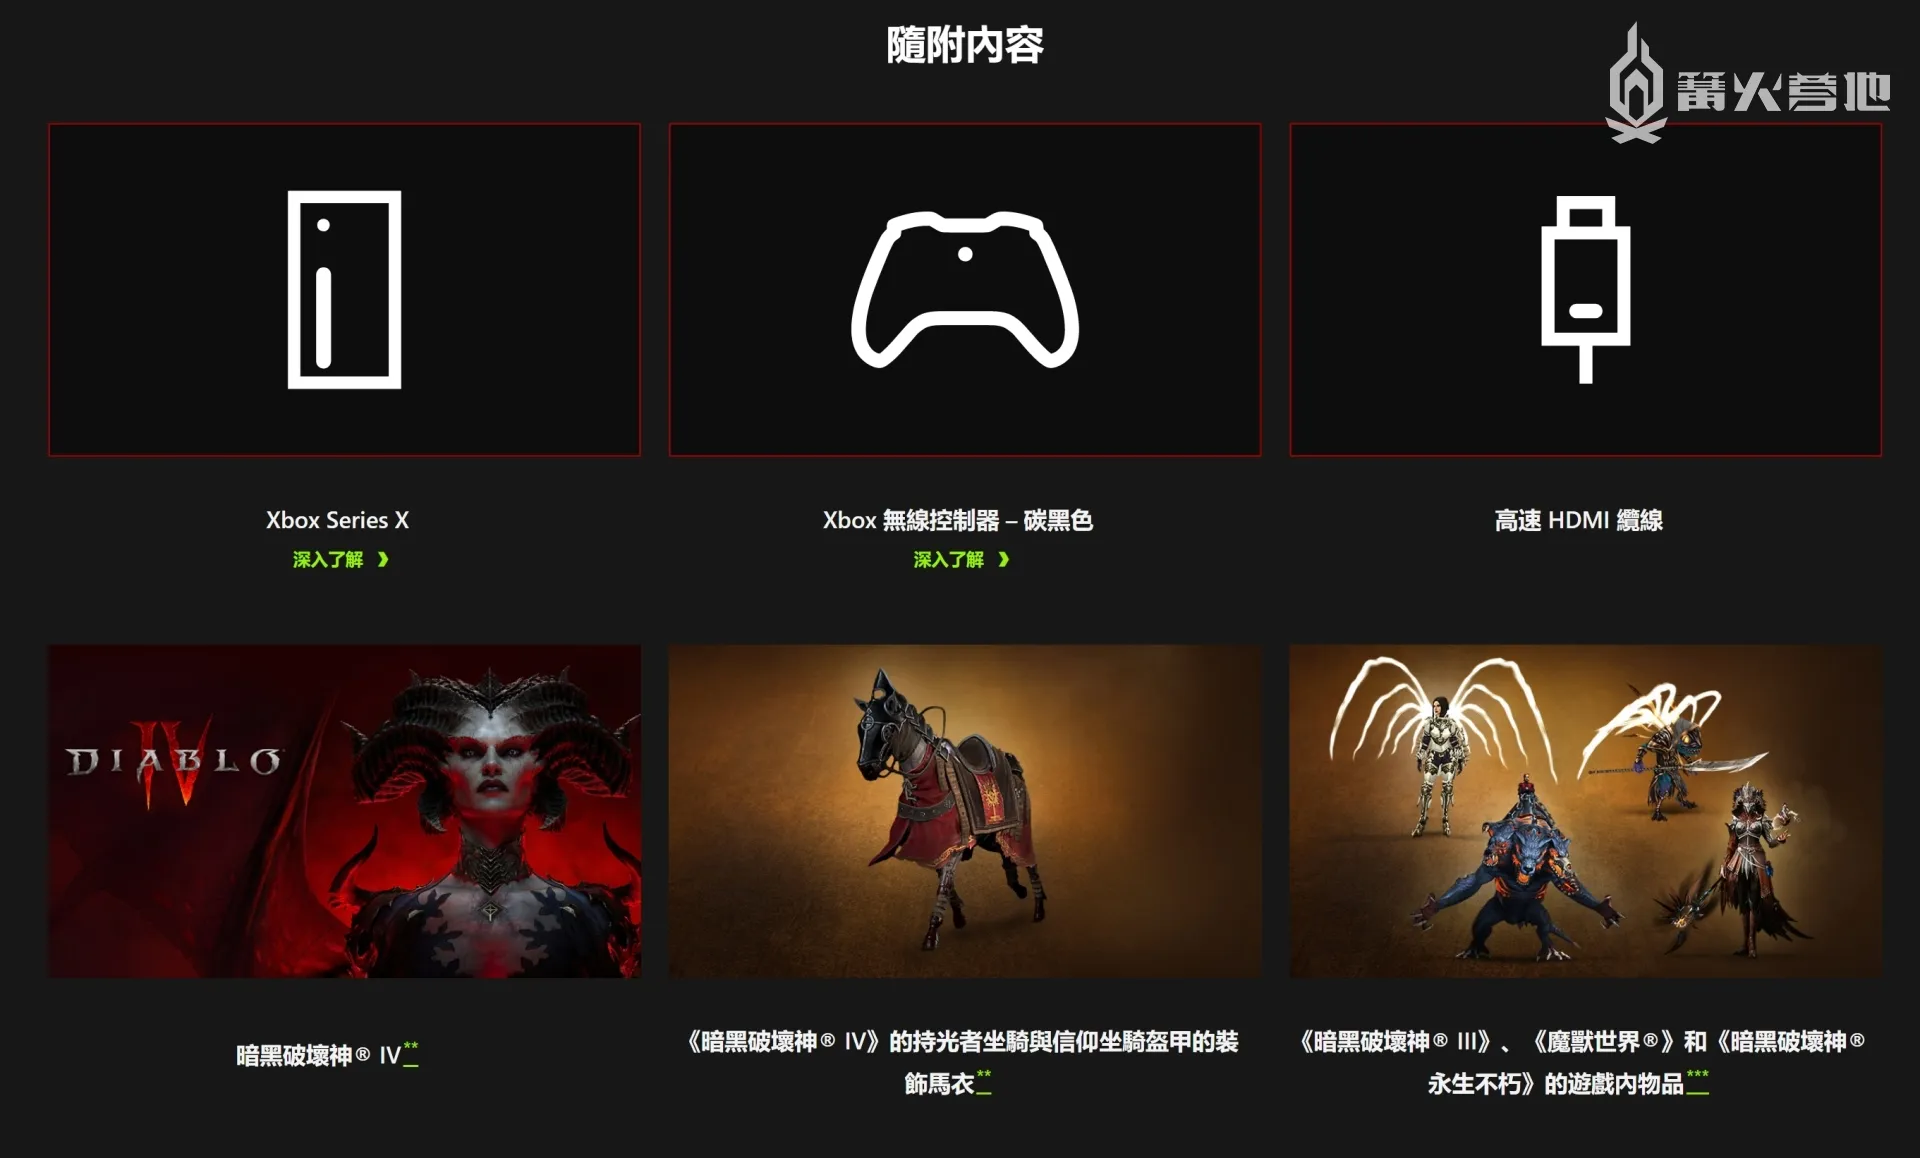 《暗黑破壞神4》Xbox Series X 同捆裝將於 6 月 6 日發售